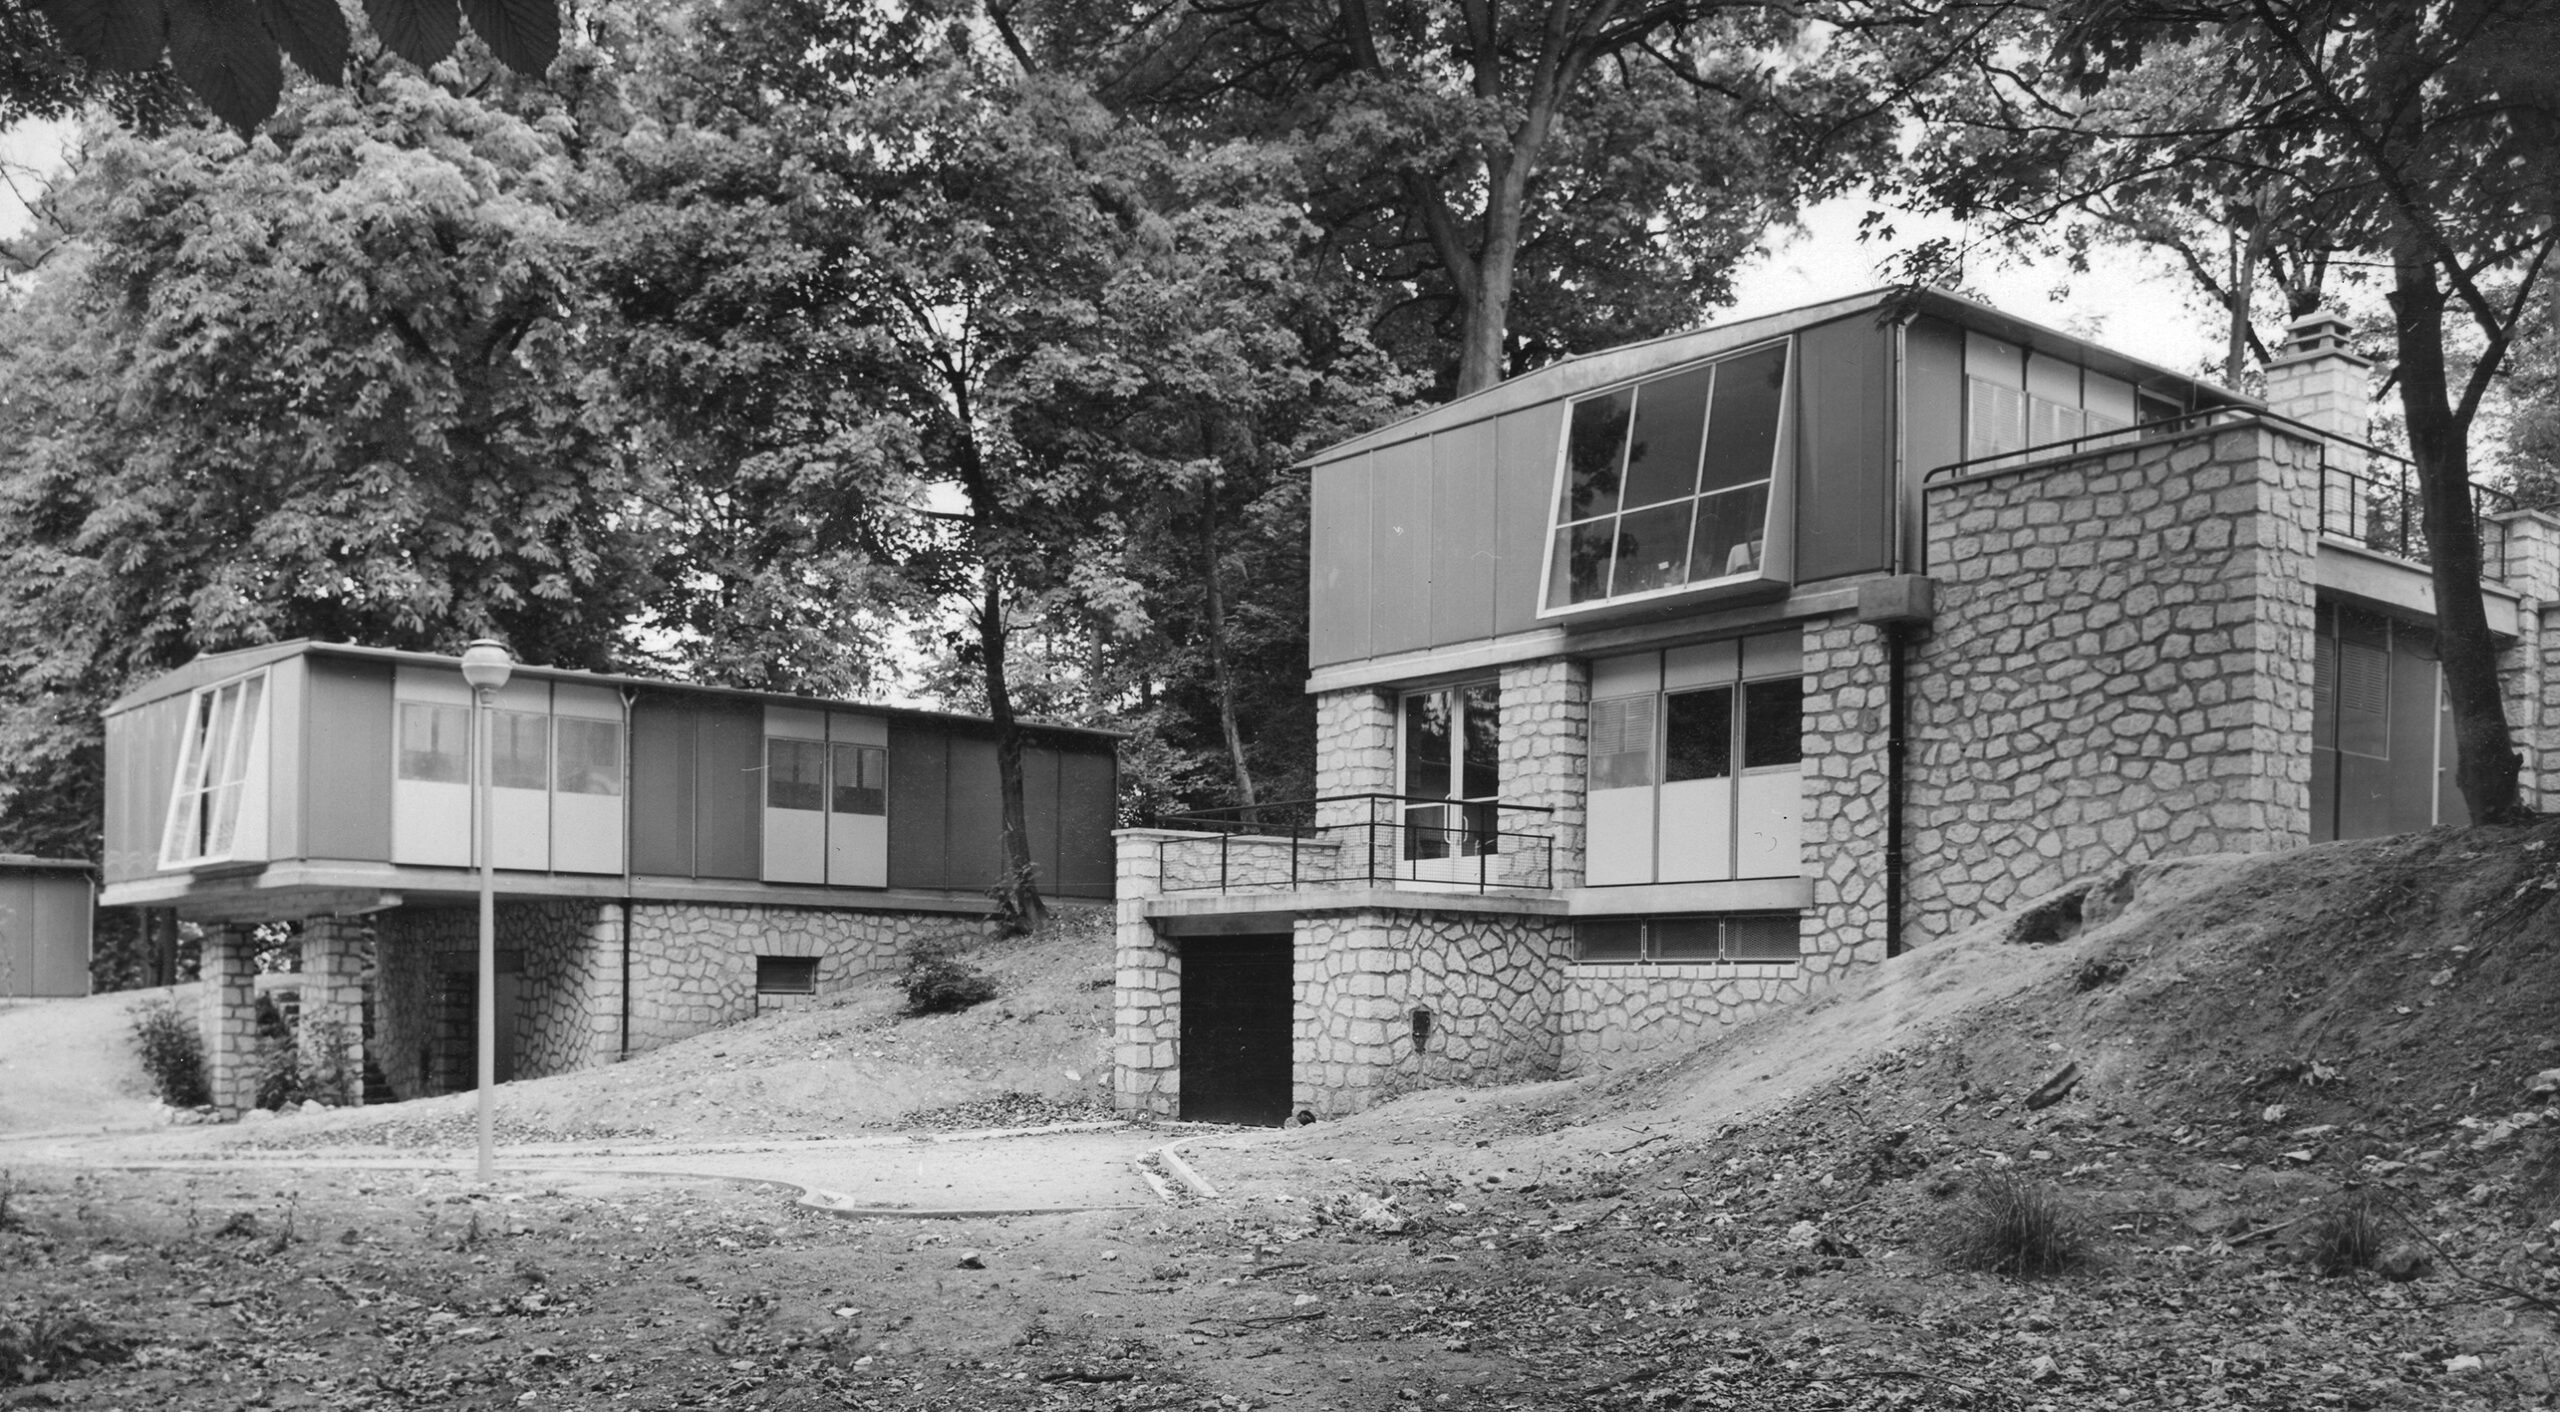 Métropole demountable house. Raised 8x12 houses, Meudon, ca. 1951.